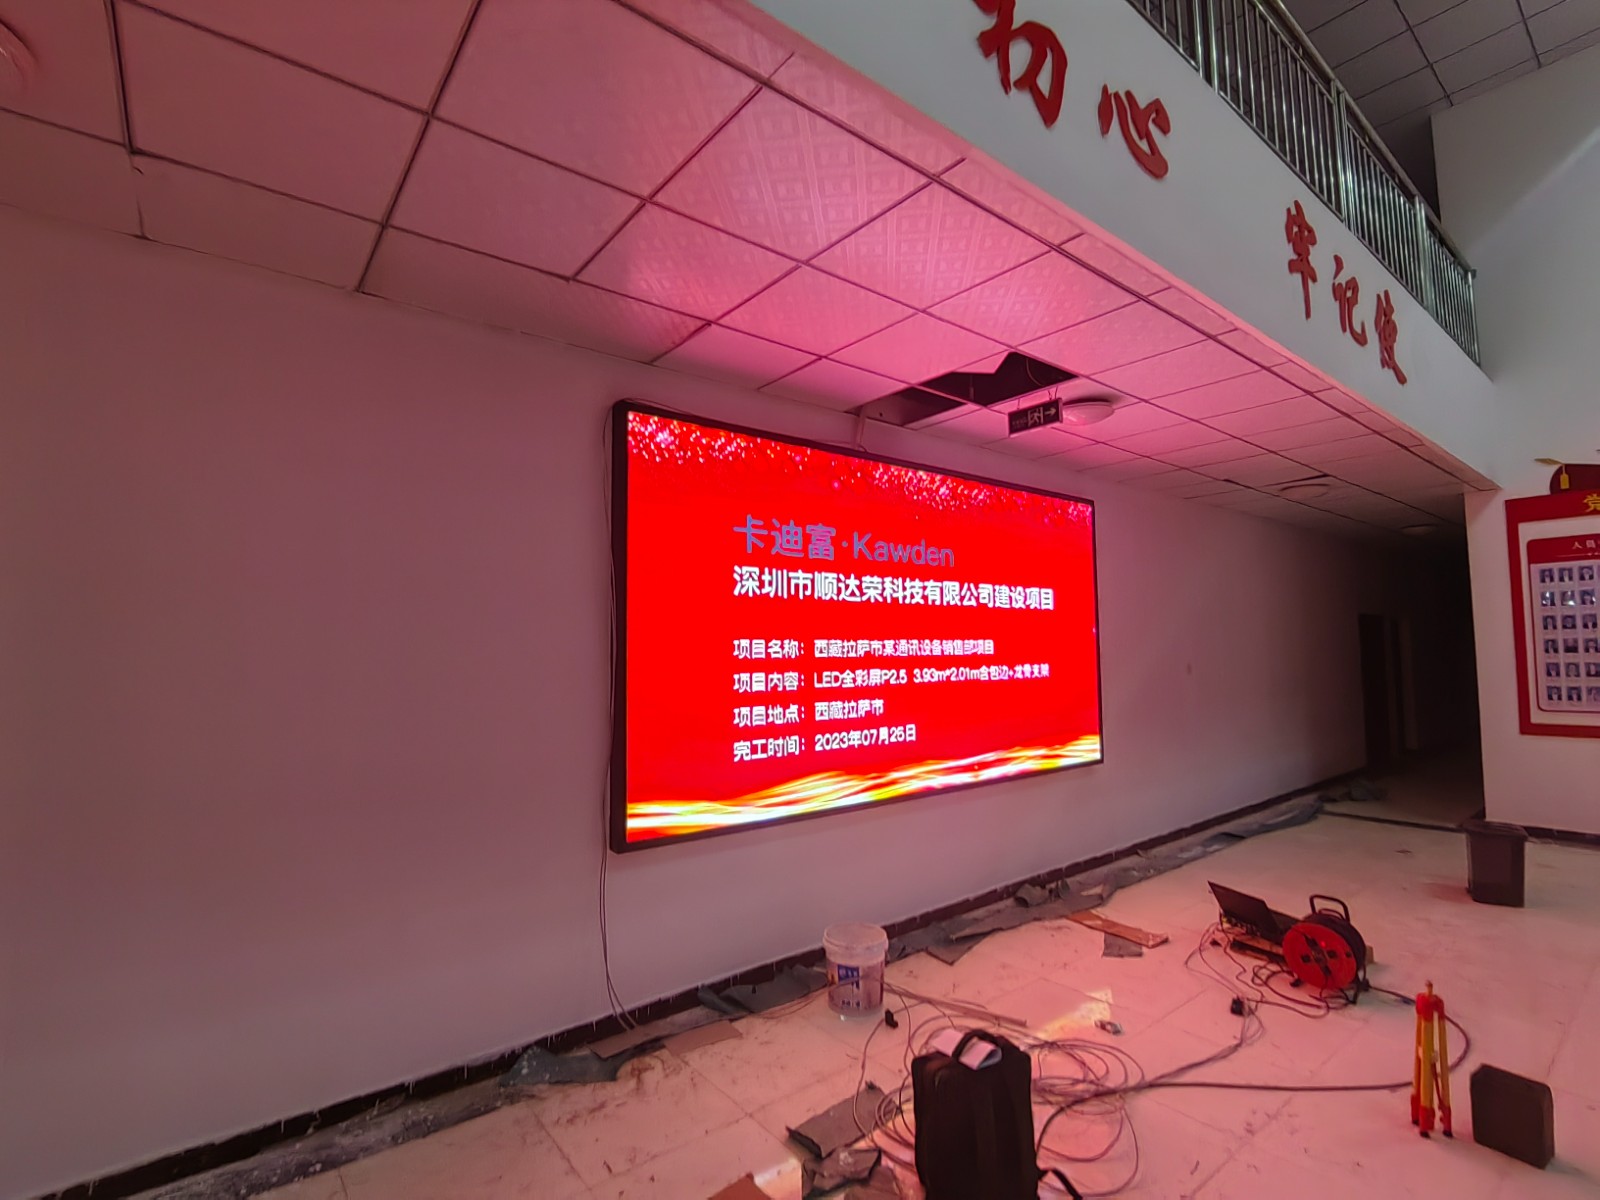 西藏拉萨市某通讯设备销售部项目P2.5led显示屏展示案例图片8